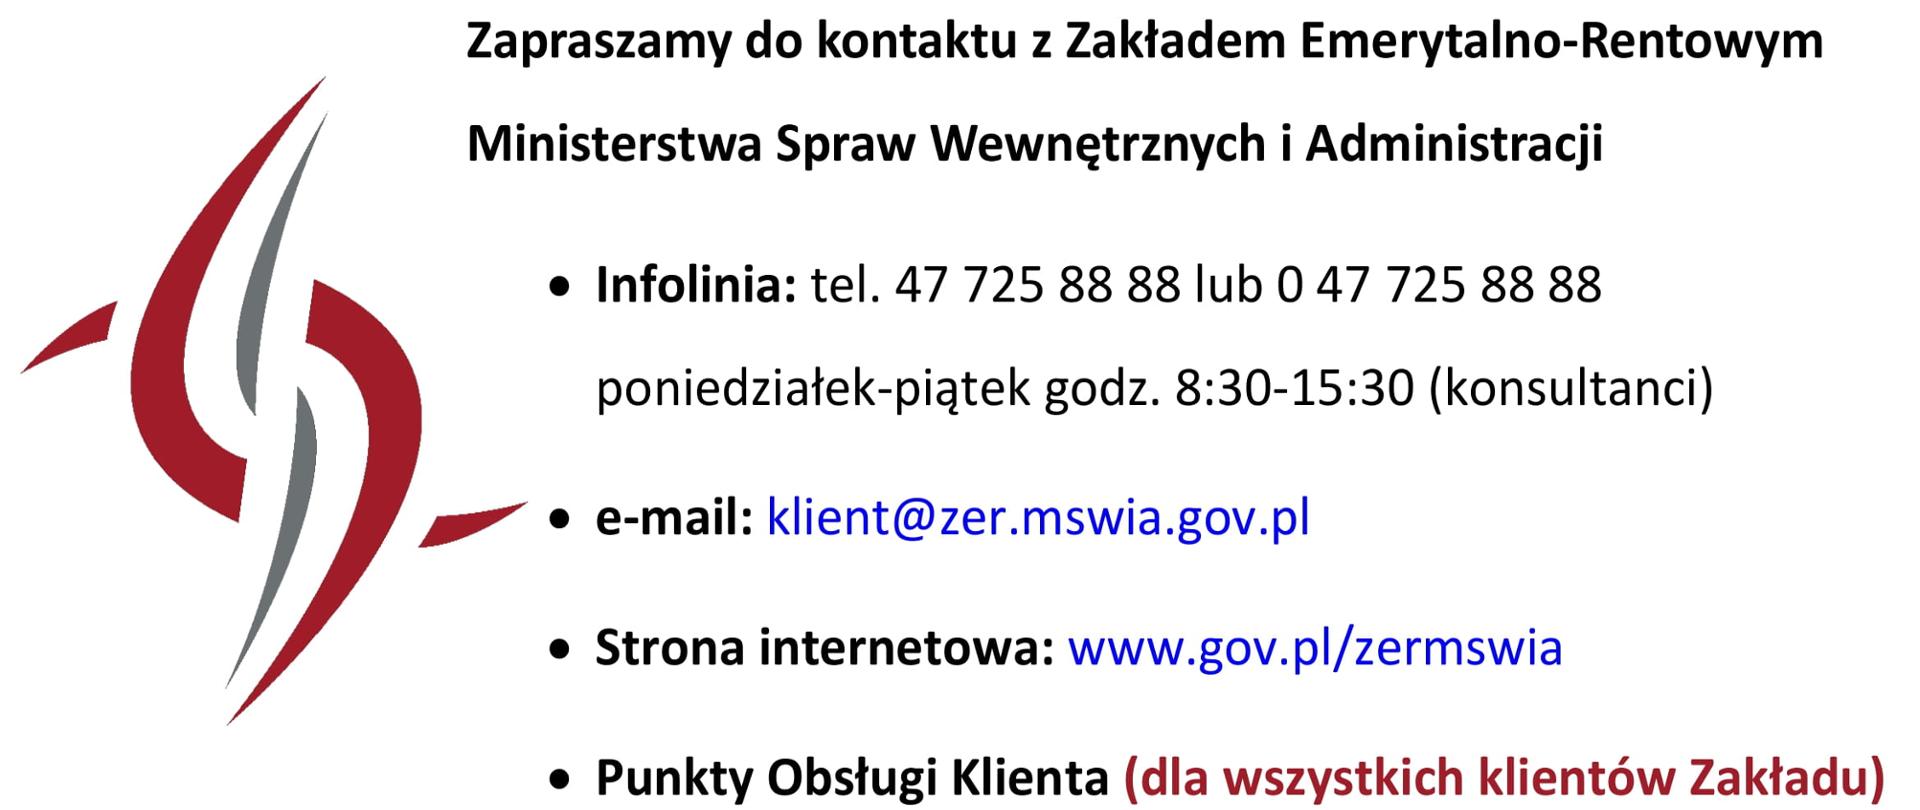 Grafika zaprasza do kontaktu z Zakładem Emerytalno-Rentowym Ministerstwa Spraw Wewnętrznych i Administracji poprzez infolinię, telefon 47 725 88 88 lub 047 725 88 88 od poniedziałku do piątku w godzinach 8:30 do 15:30 (konsultanci), email: klient@zer.mswia.gov.pl, stronę internetową www.gov.pl/zermswia oraz Punkty Obsługi Klienta dla wszystkich klientów Zakładu. Po lewej stronie znajduje się znak graficzny z logo ZER MSWiA.